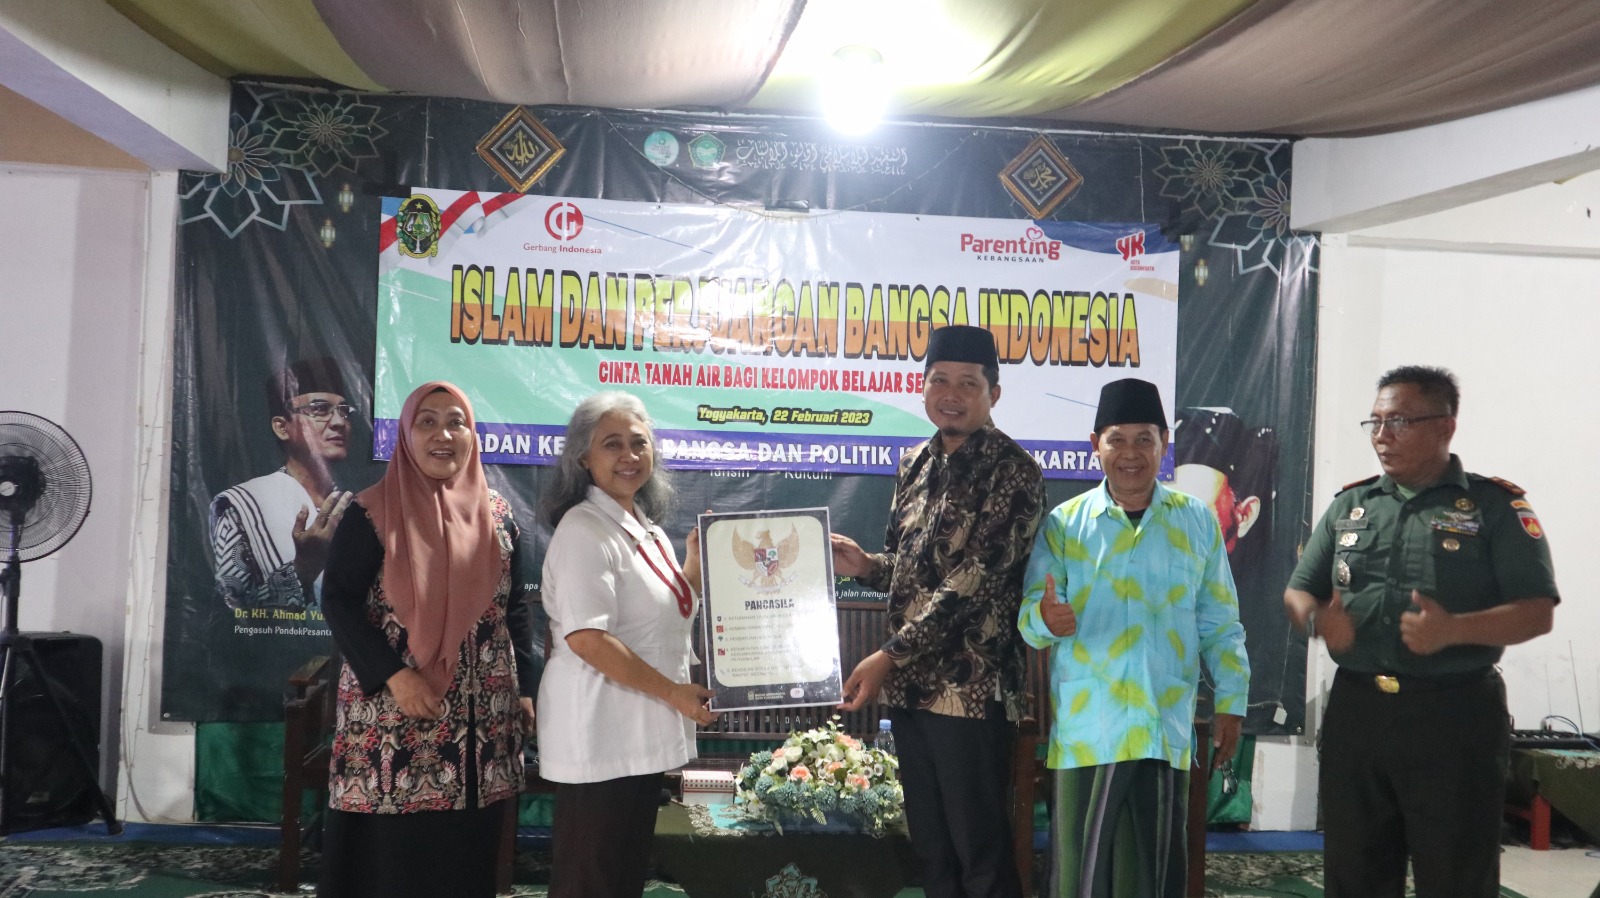 Cinta Tanah Air bagi Kelompok Belajar Luar Sekolah di Kota Yogyakarta